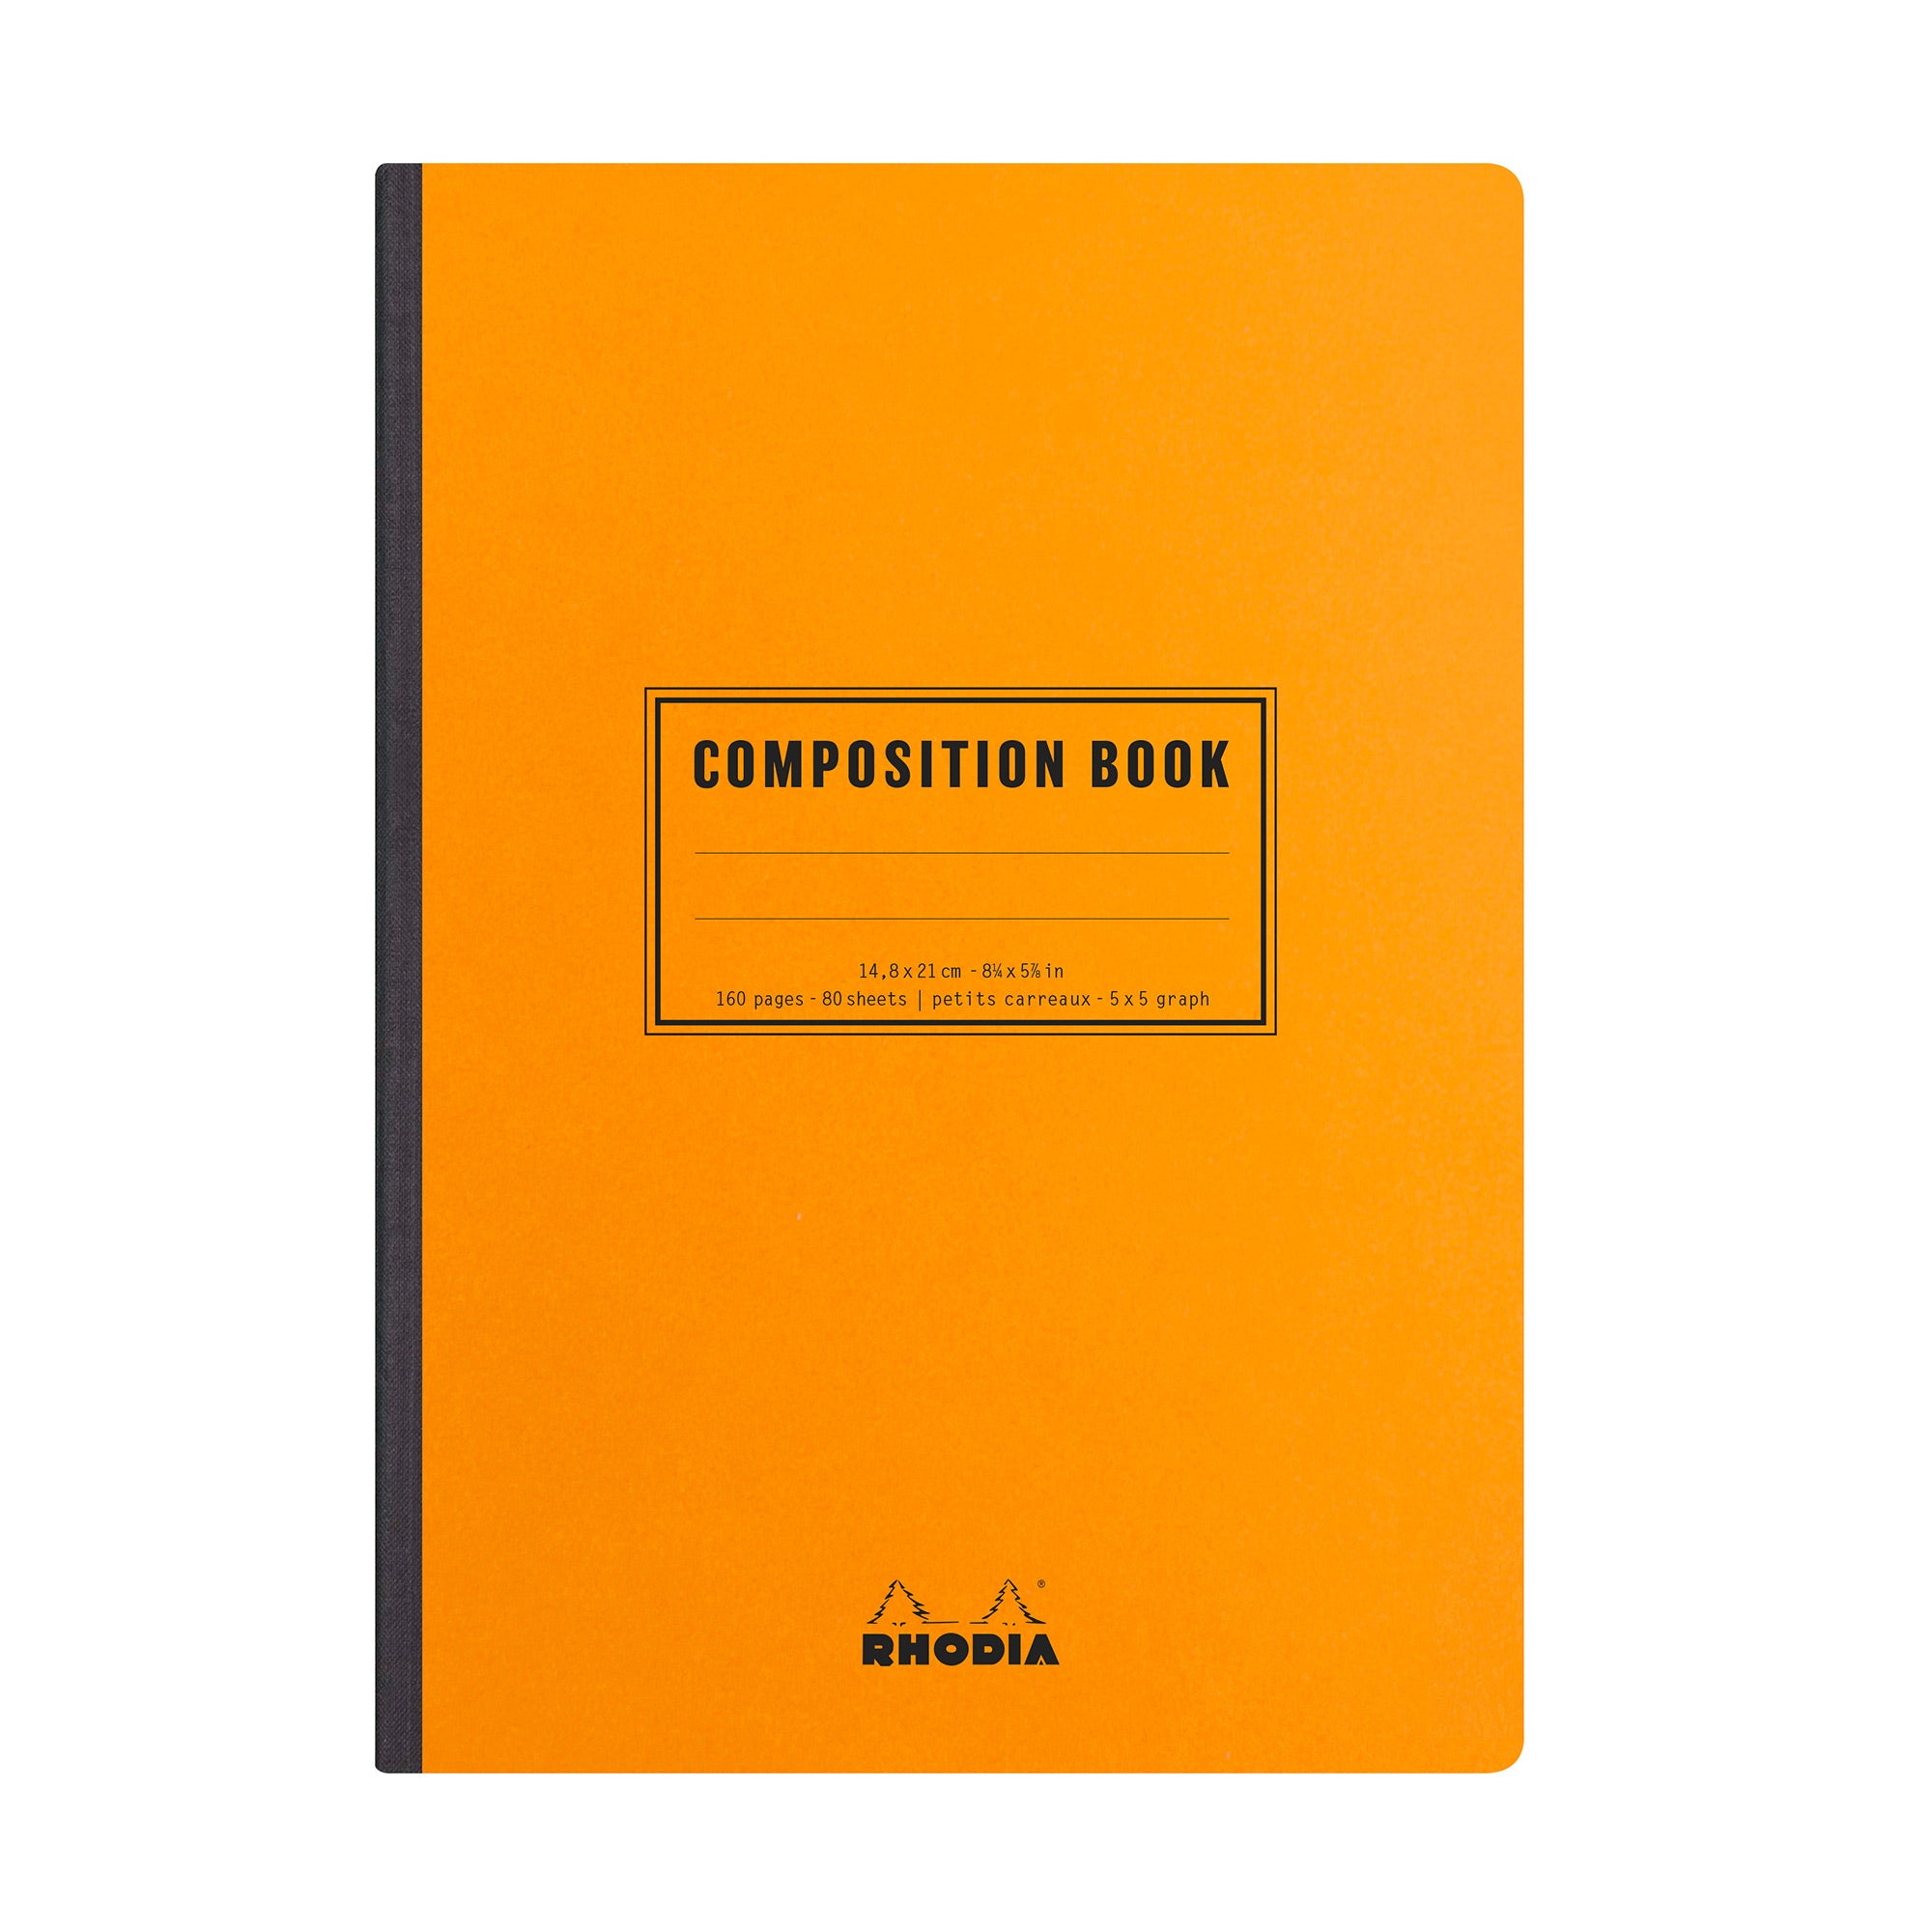 RHODIA Bloc de direction couverture Orange 80 feuilles (160 pages) format A6  réglure 5x5